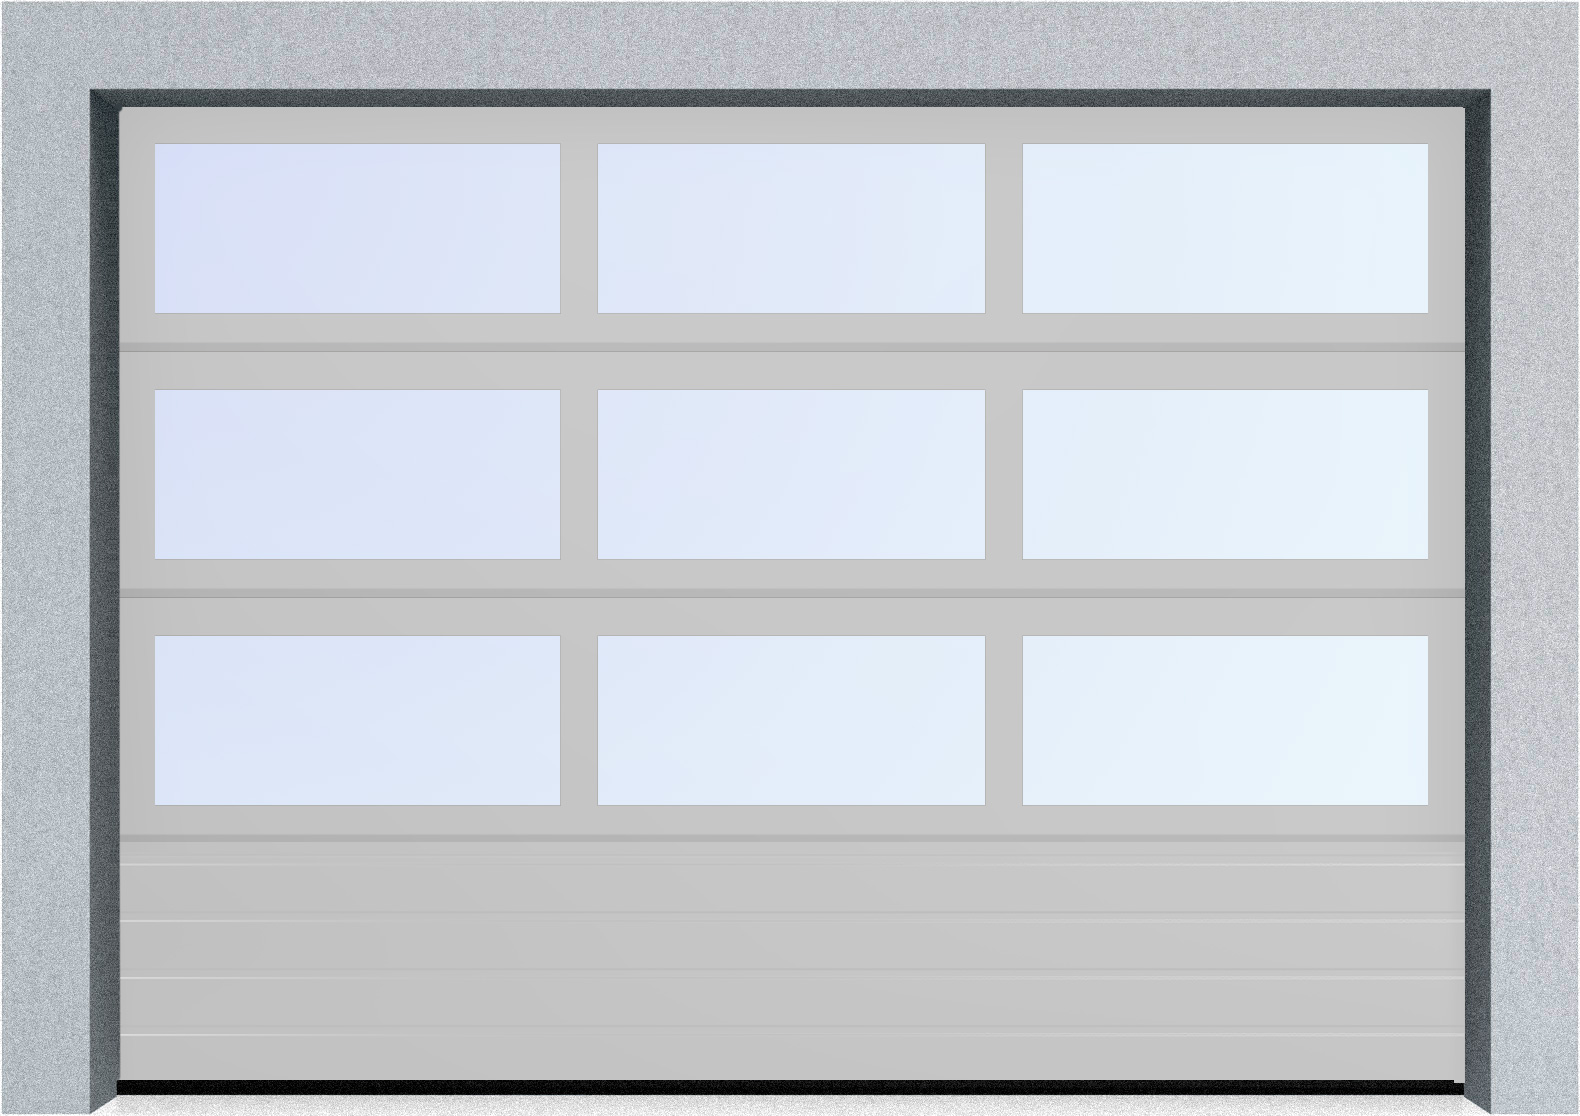  Секционные панорамные ворота серии AluTrend с комбинированным типом полотна (АЛПС) 2500х2625 нижняя панель S-гофр, Микроволна стандартные цвета, фото 16 